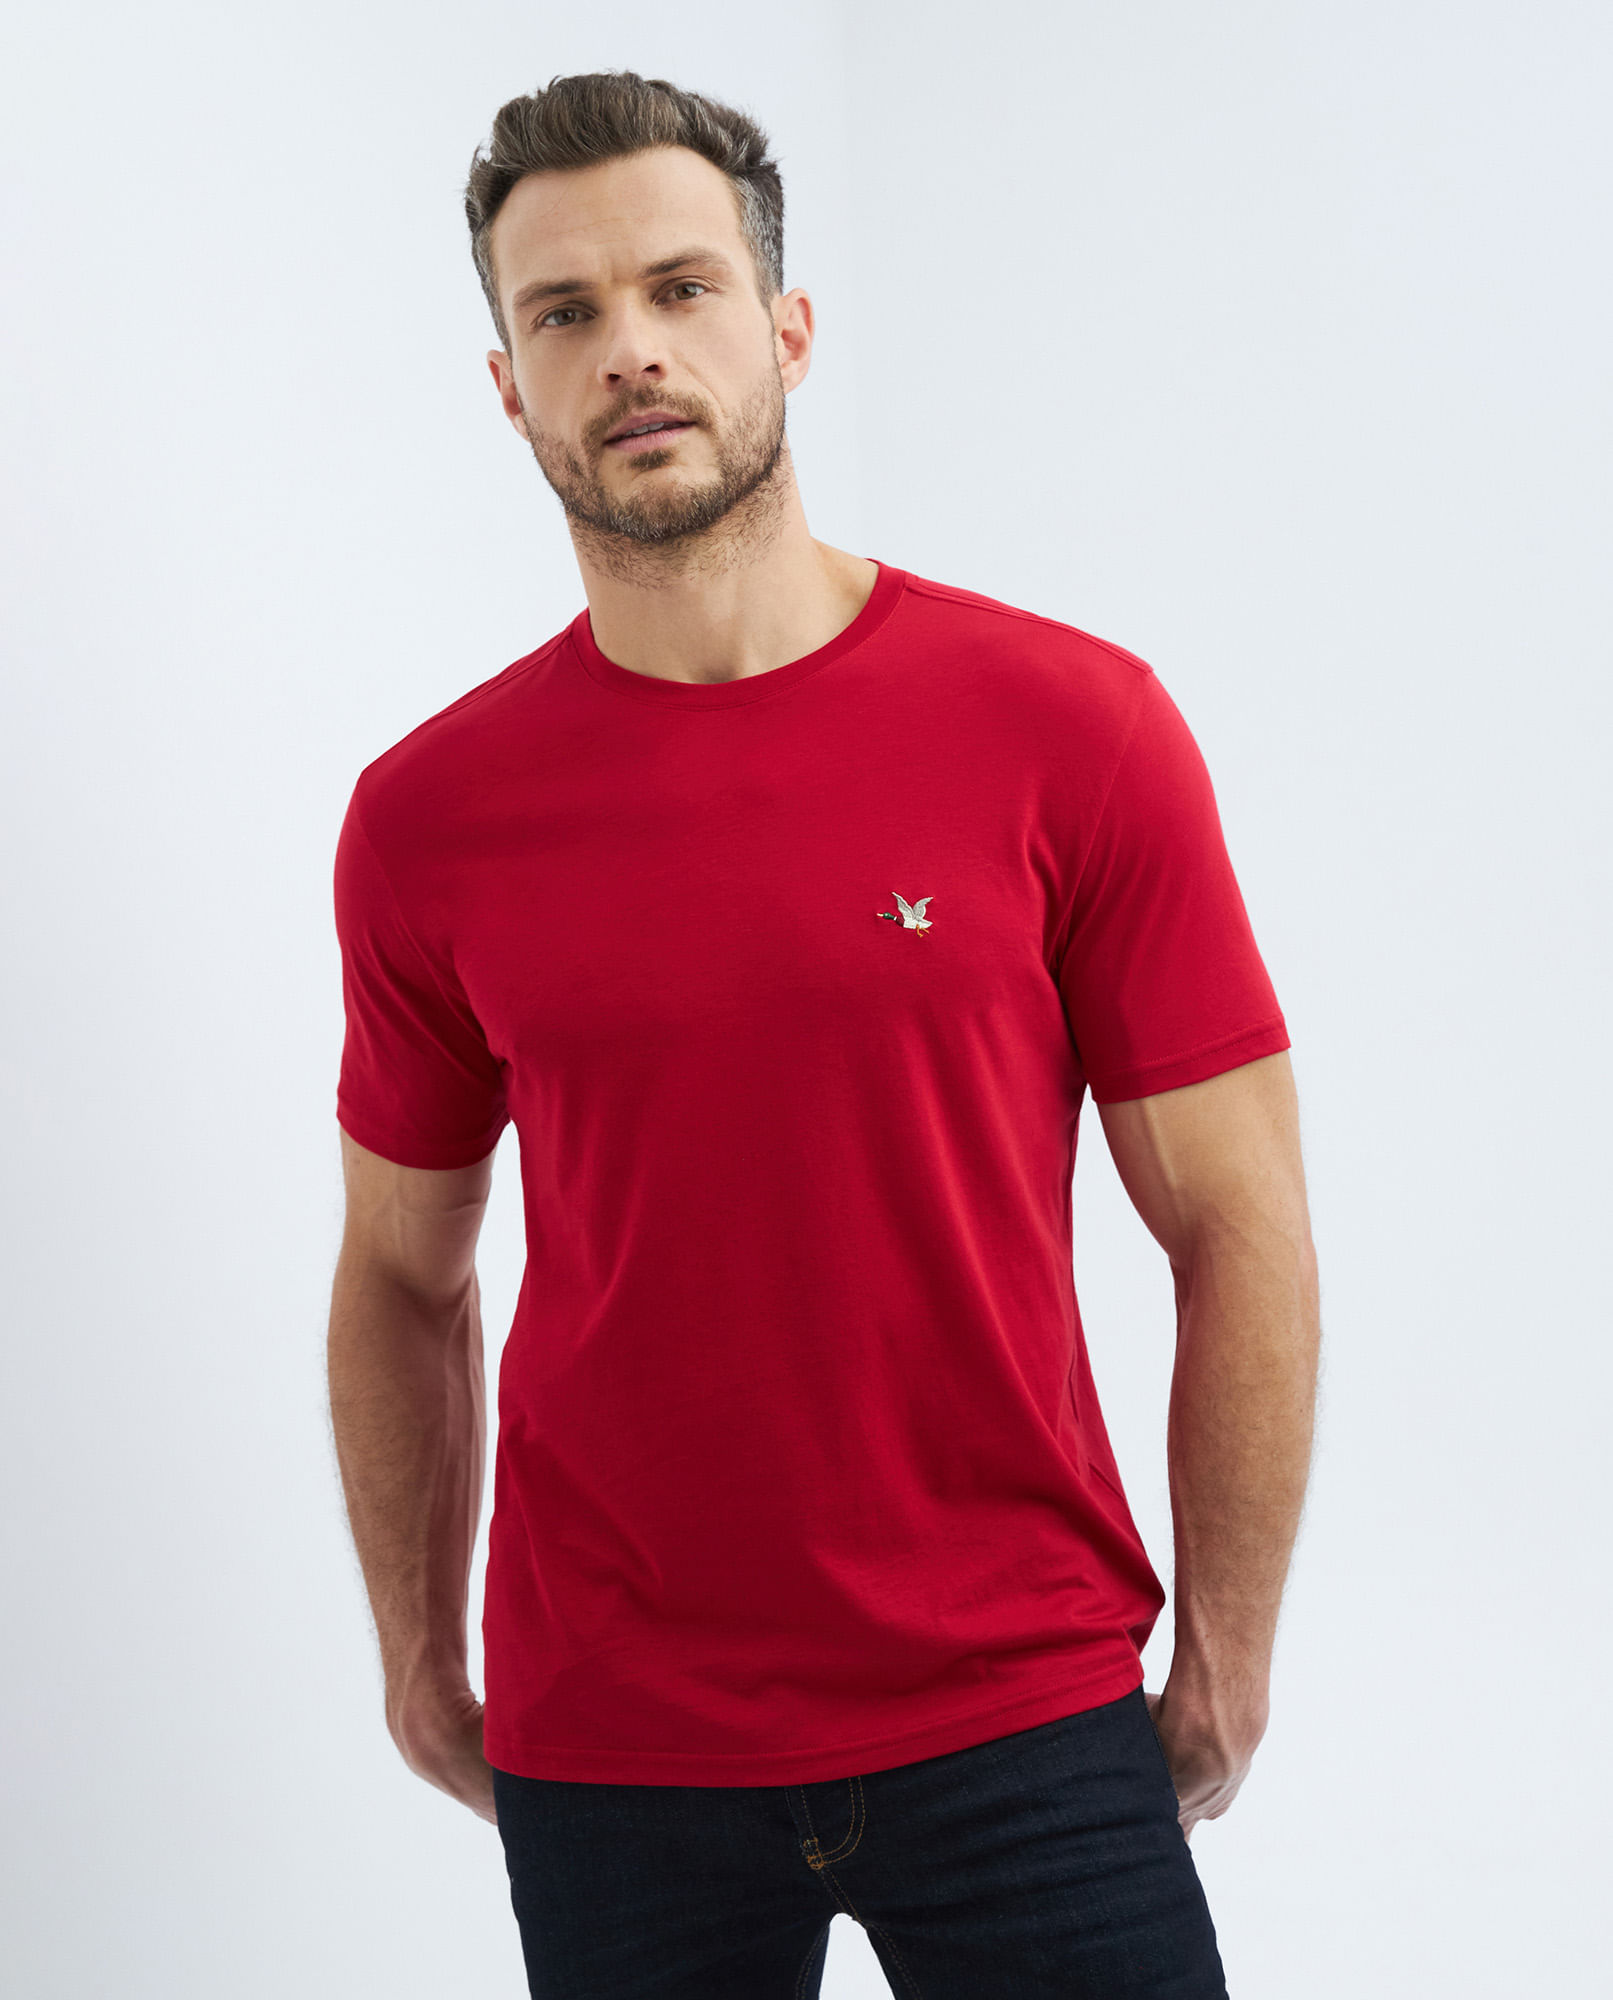 Camiseta Básica de Hombre, Slim Fit Cuello Redondo - Algodón Pima